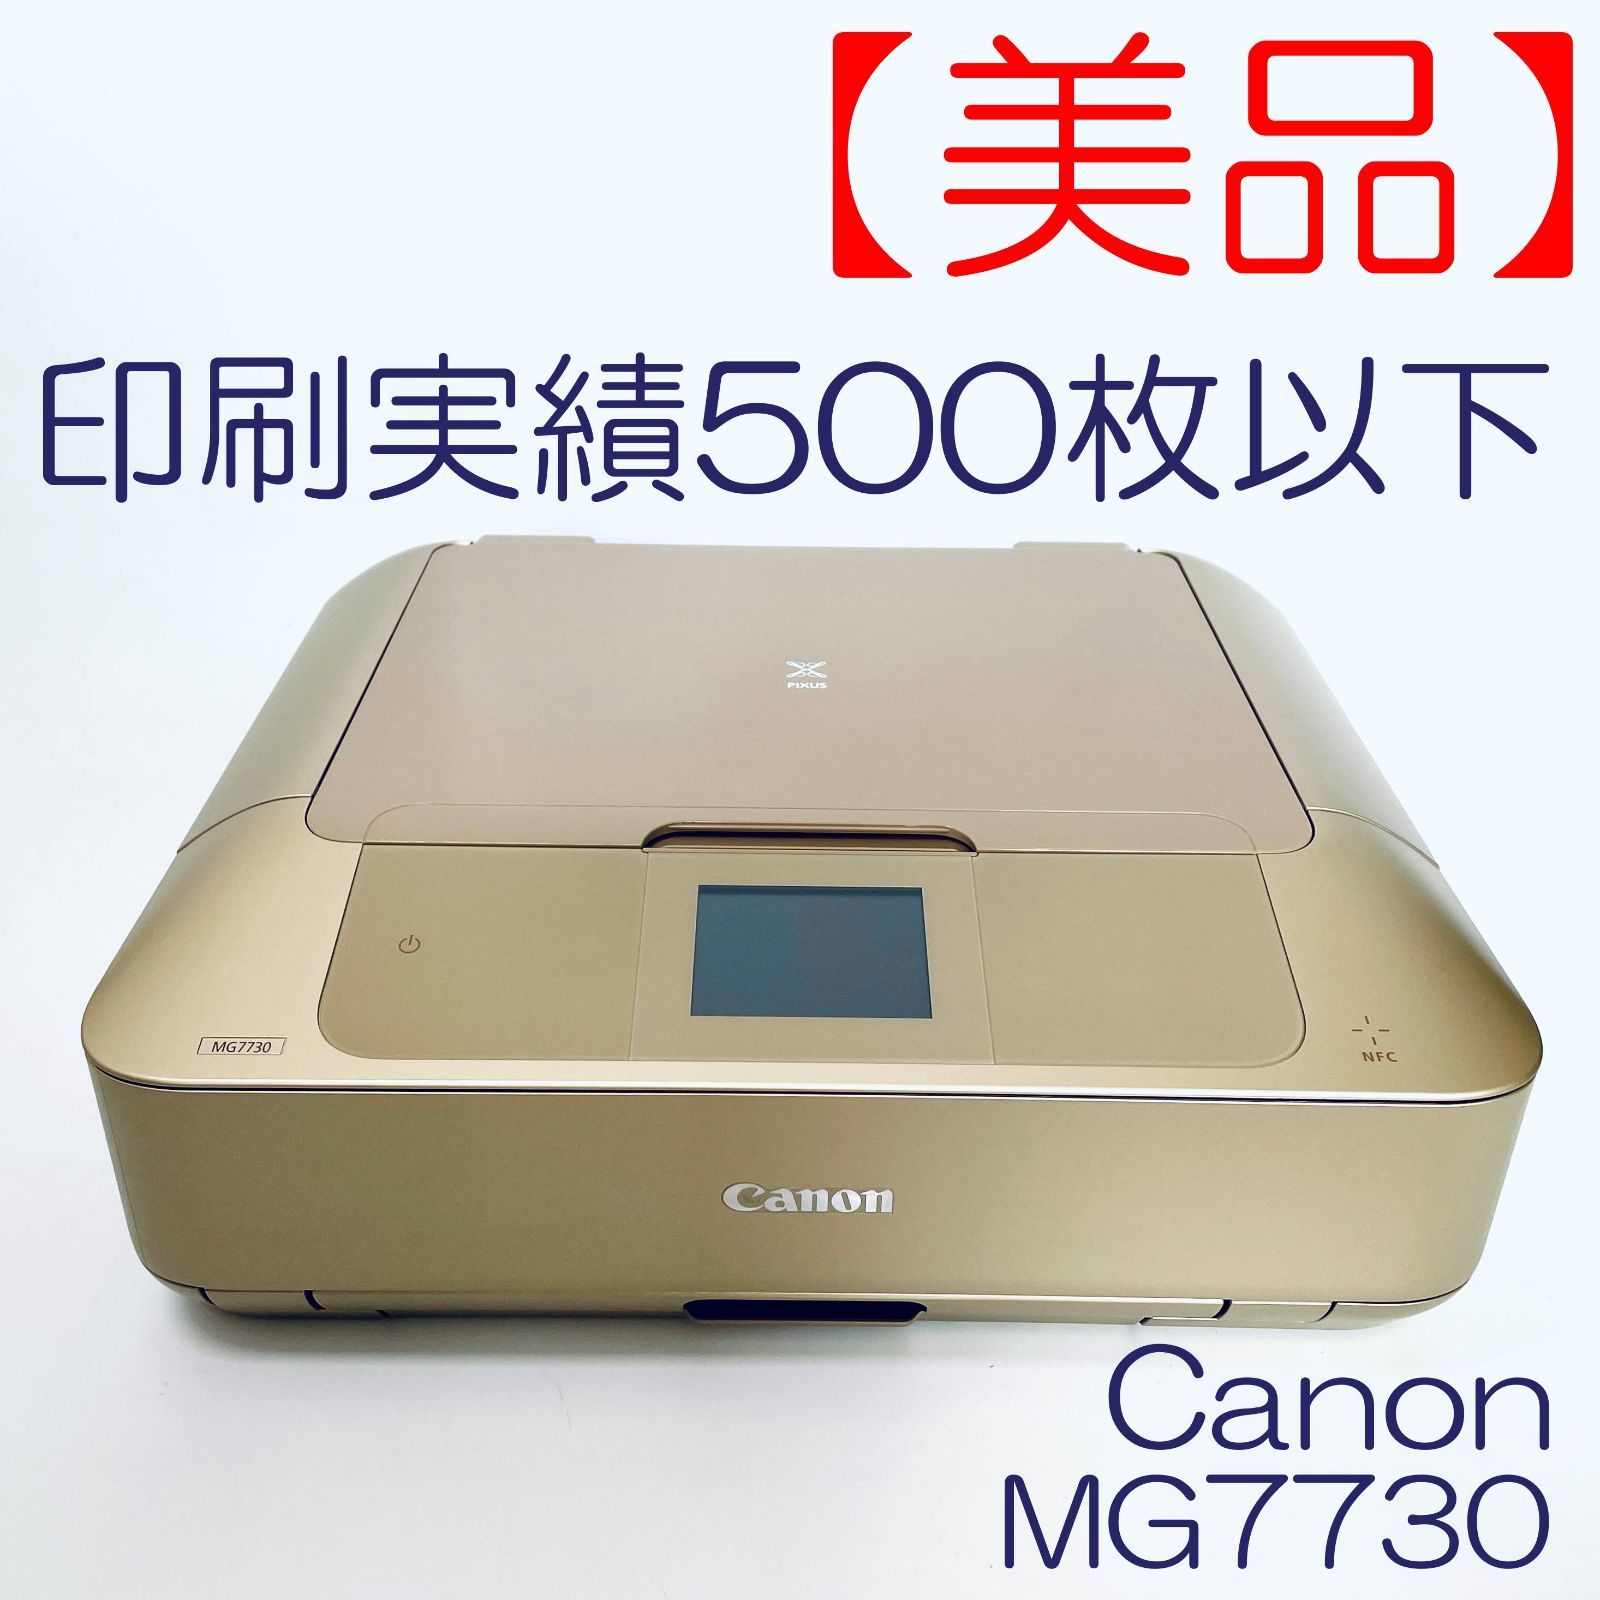 美品 Canon PIXUS プリンター MG7730 - プリンター、複合機